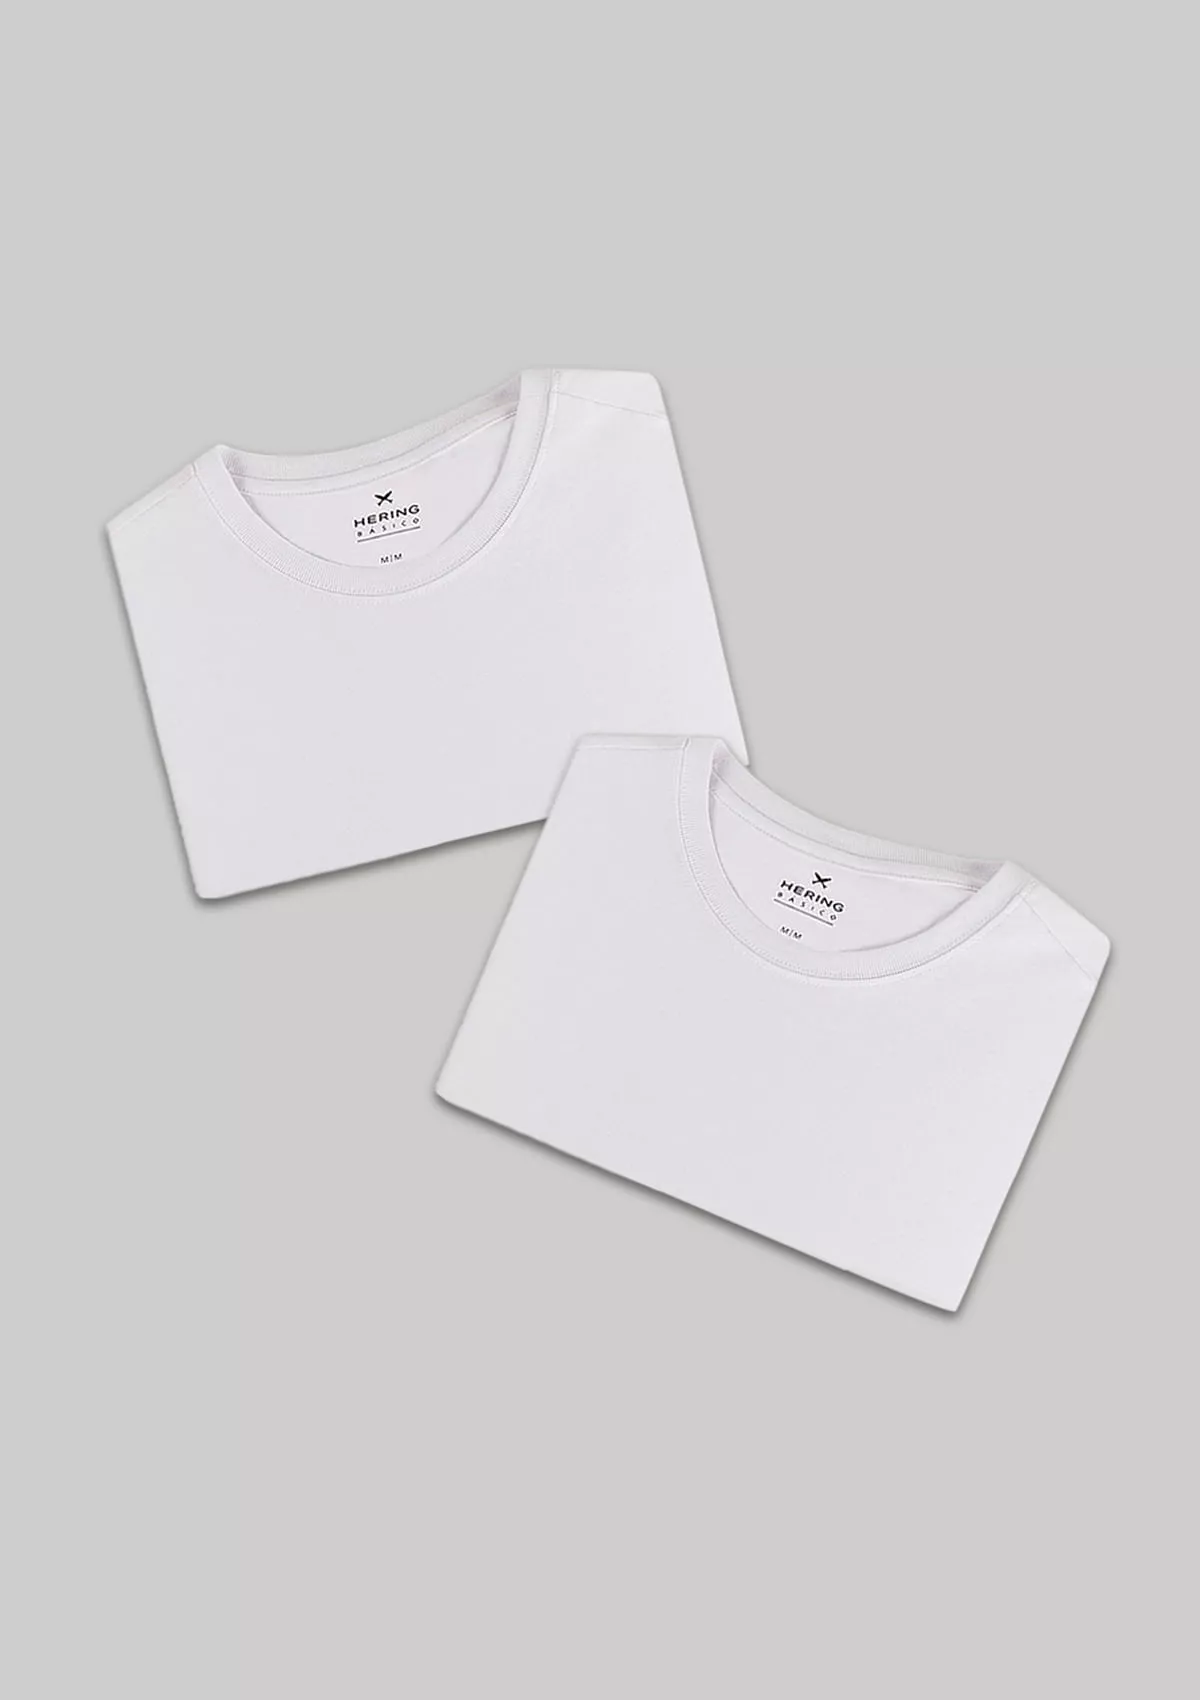 Kit Com 2 Camisetas Masculinas Bsicas - Branco